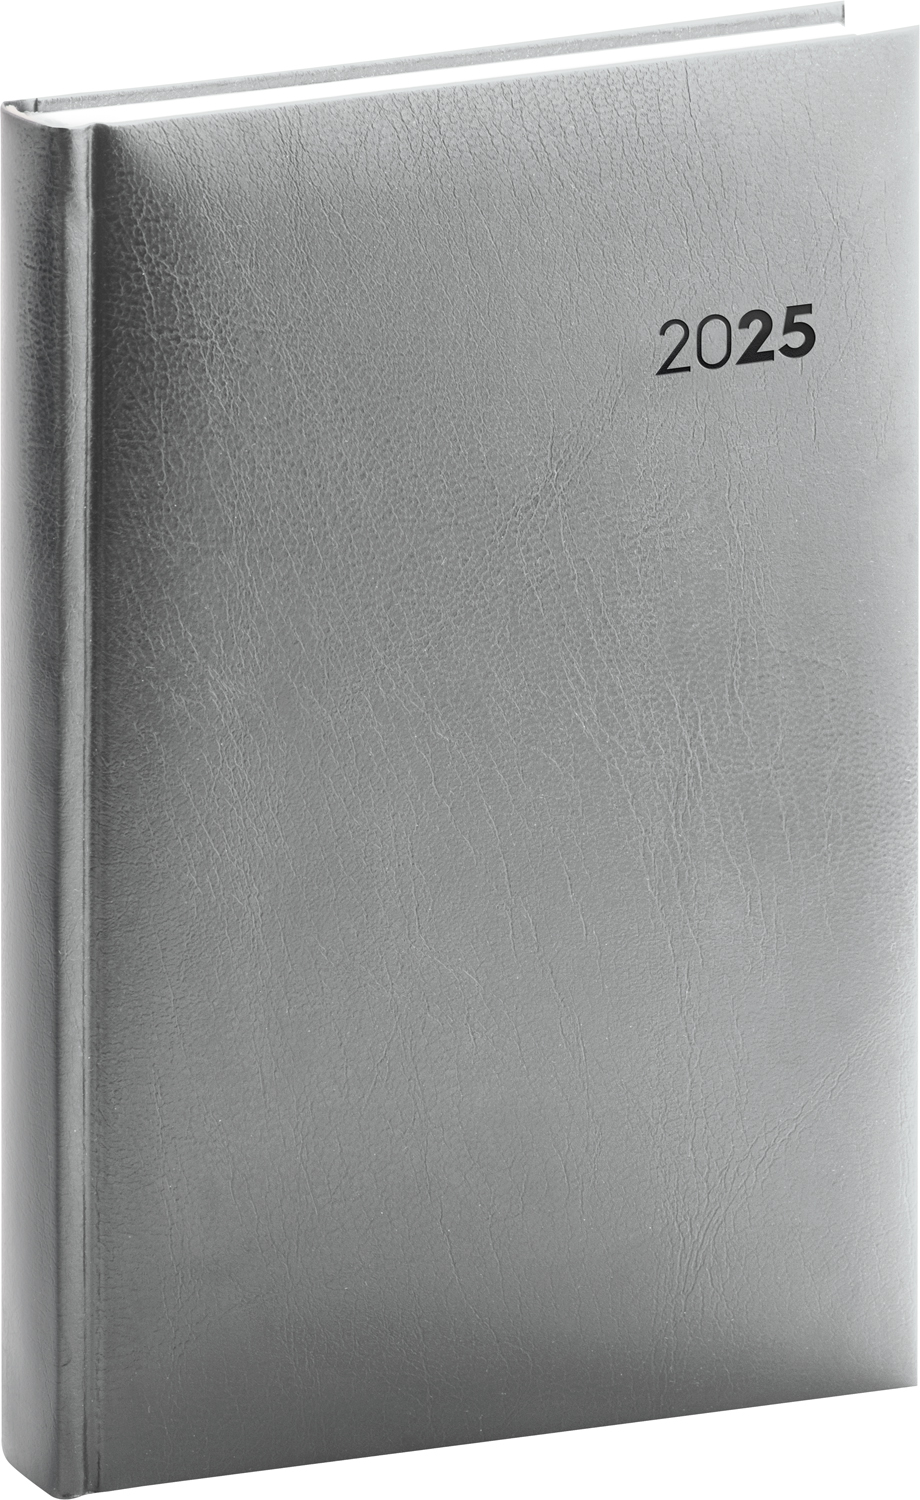 Denní diář Balacron 2025, B6 - šedá